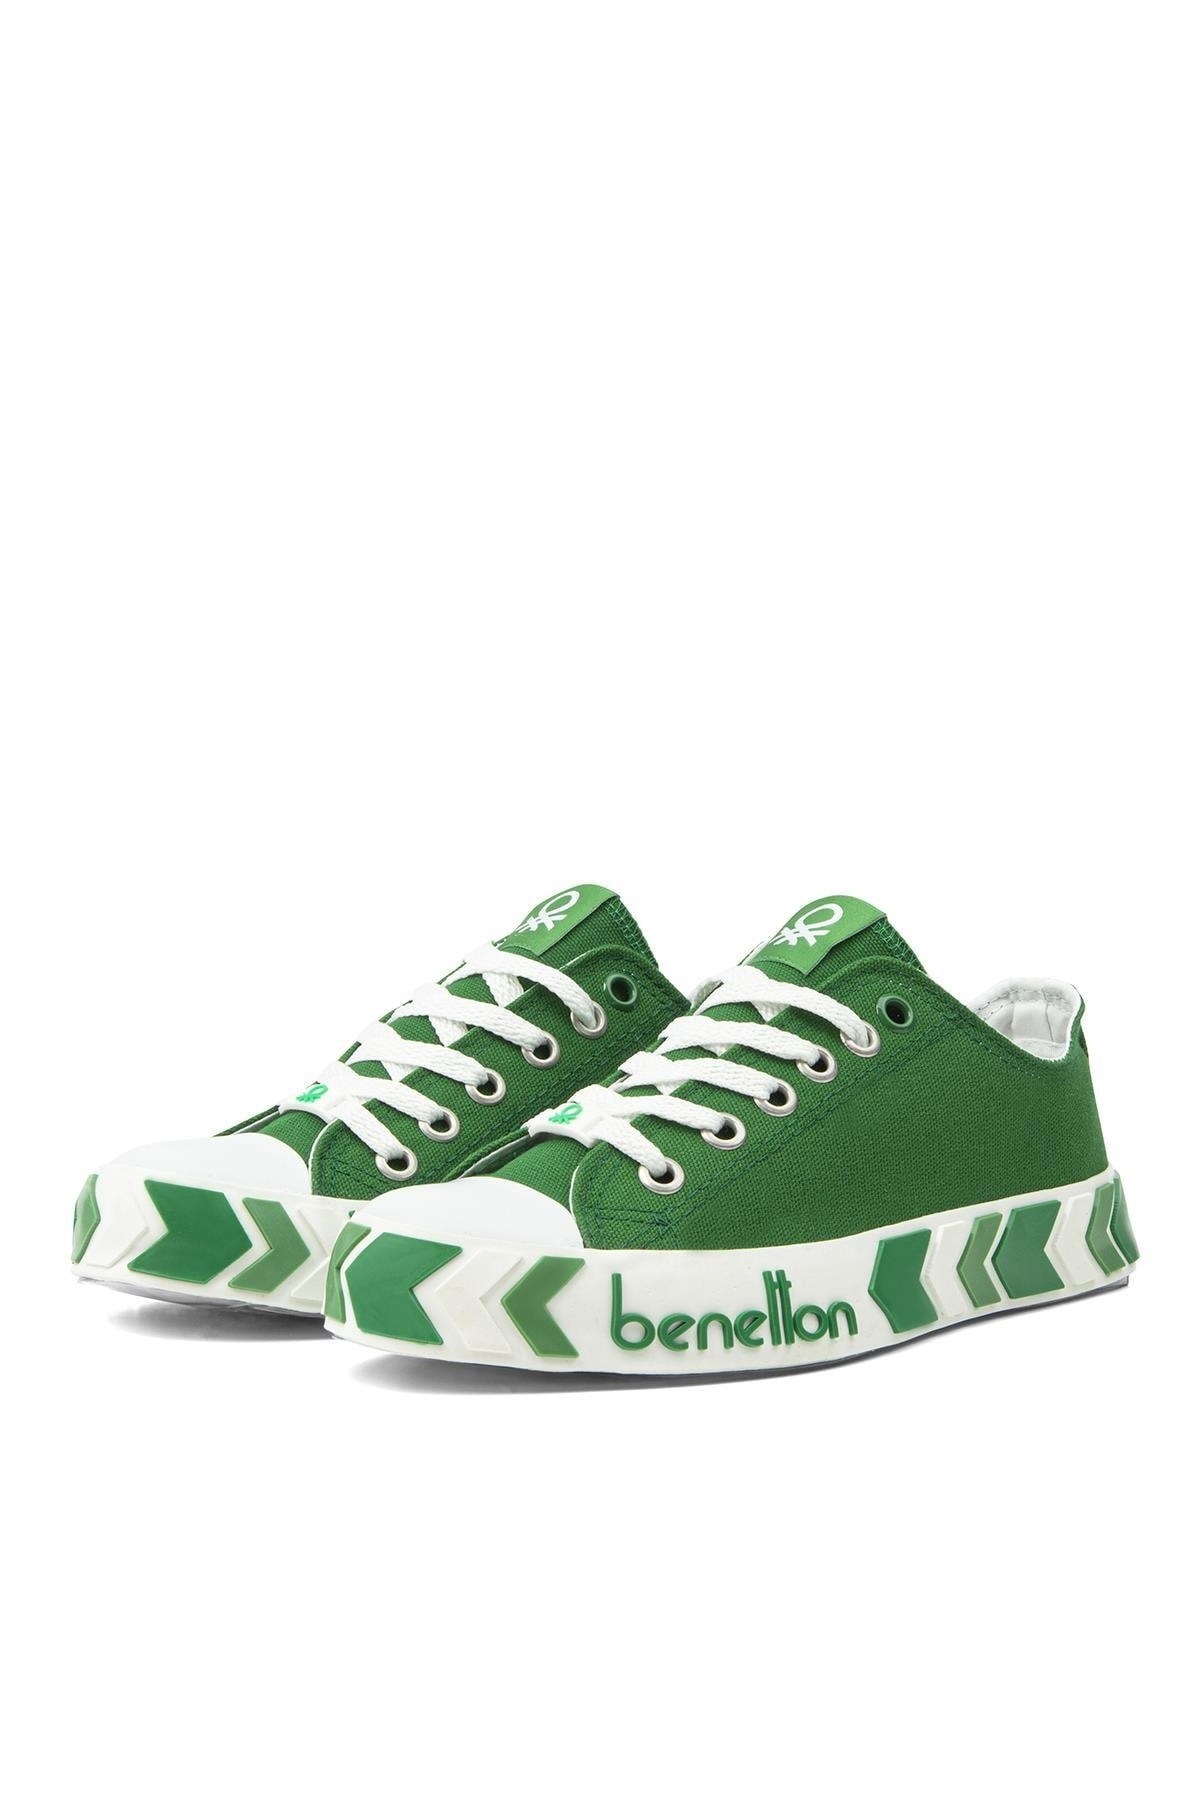 Benetton Kadın Ayakkabı BN-30620 91-Yesil